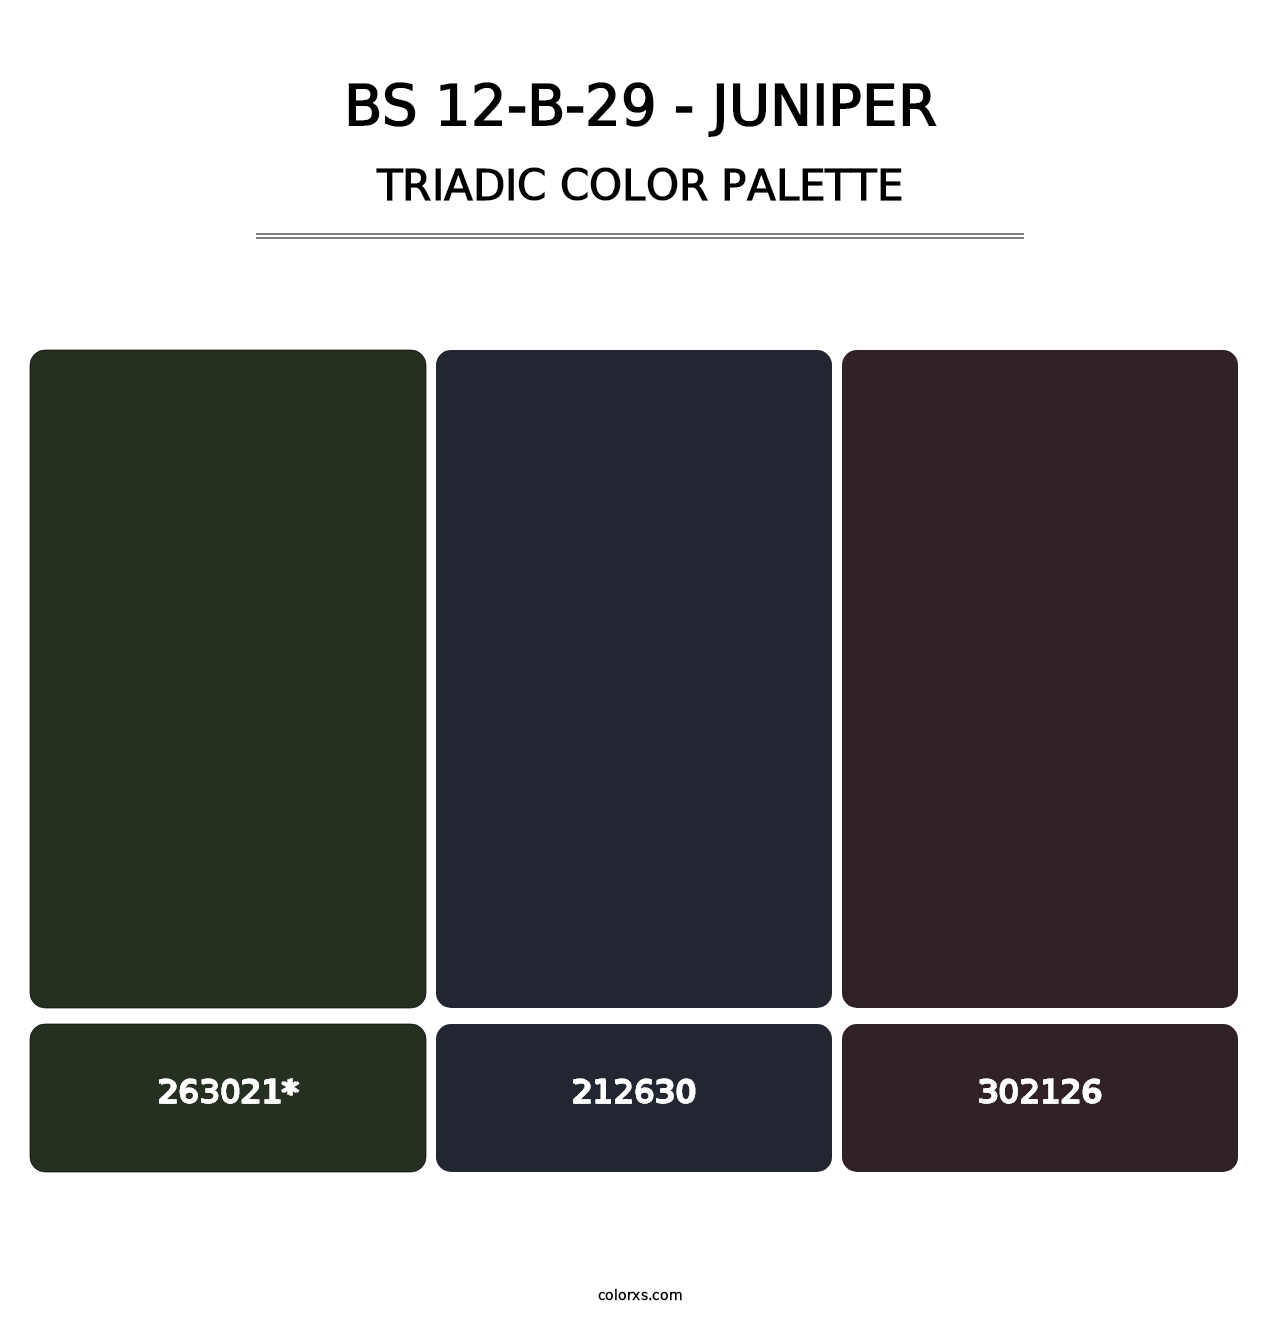 BS 12-B-29 - Juniper - Triadic Color Palette